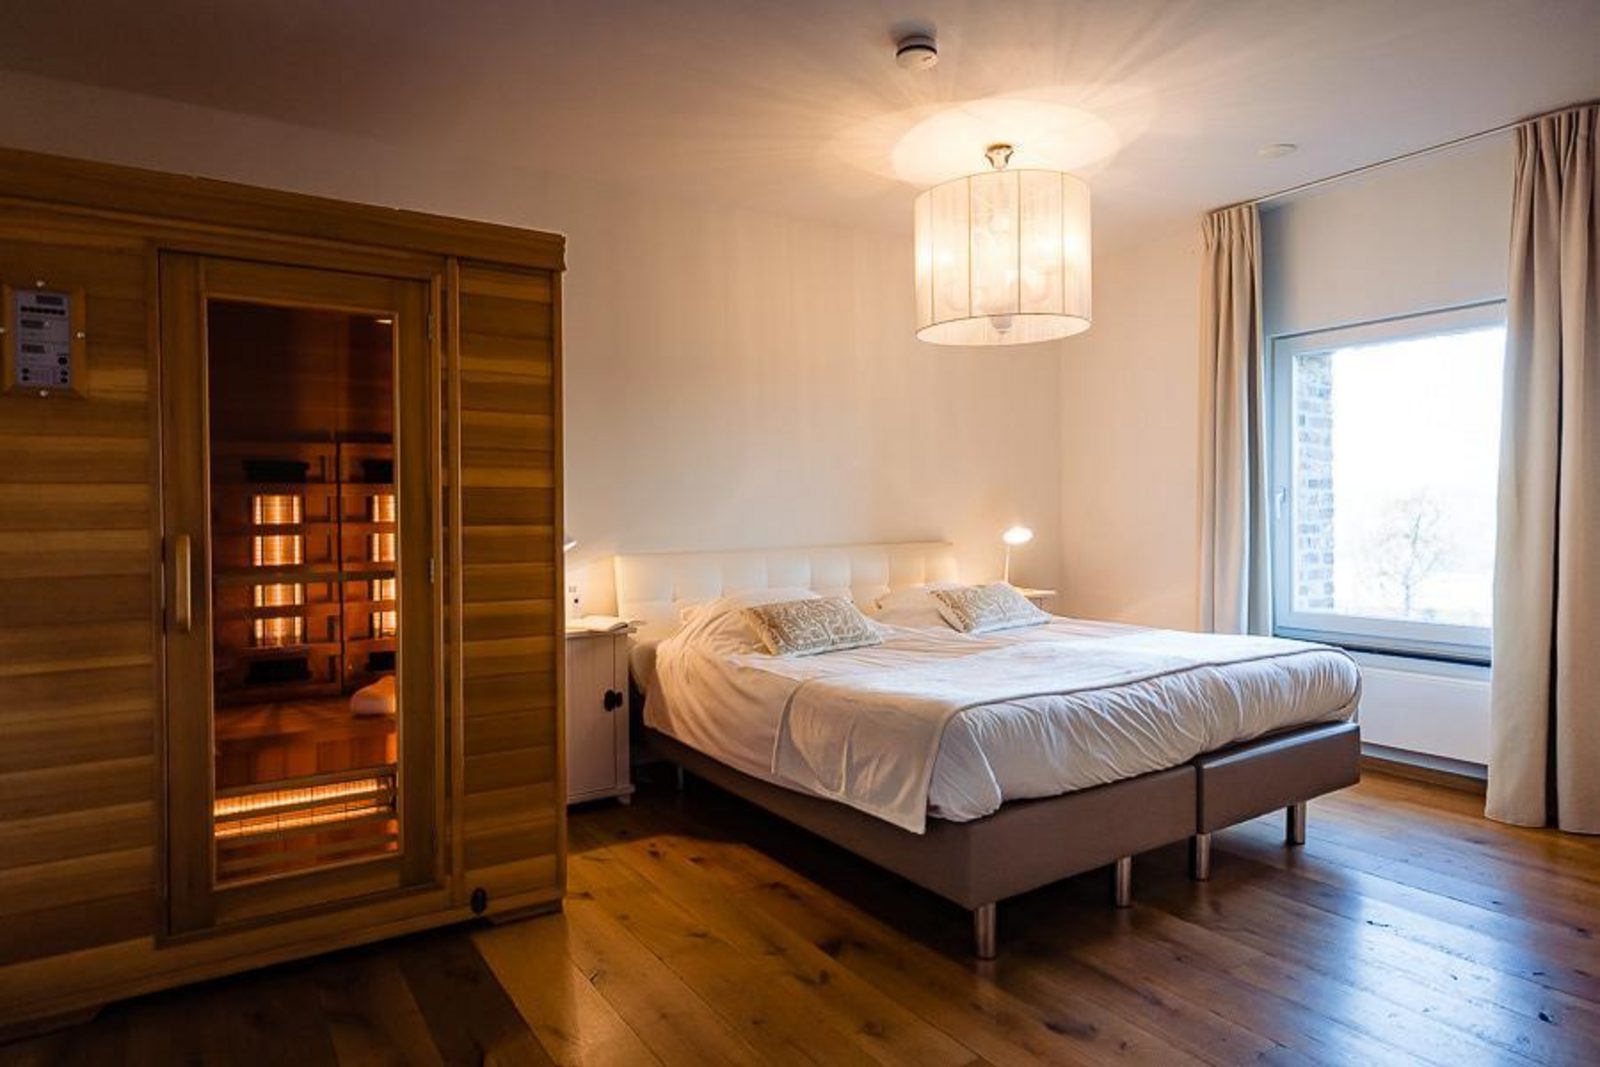 St. Geertruid Mirabelle I luxe vakantiehuis met sauna in Limburg